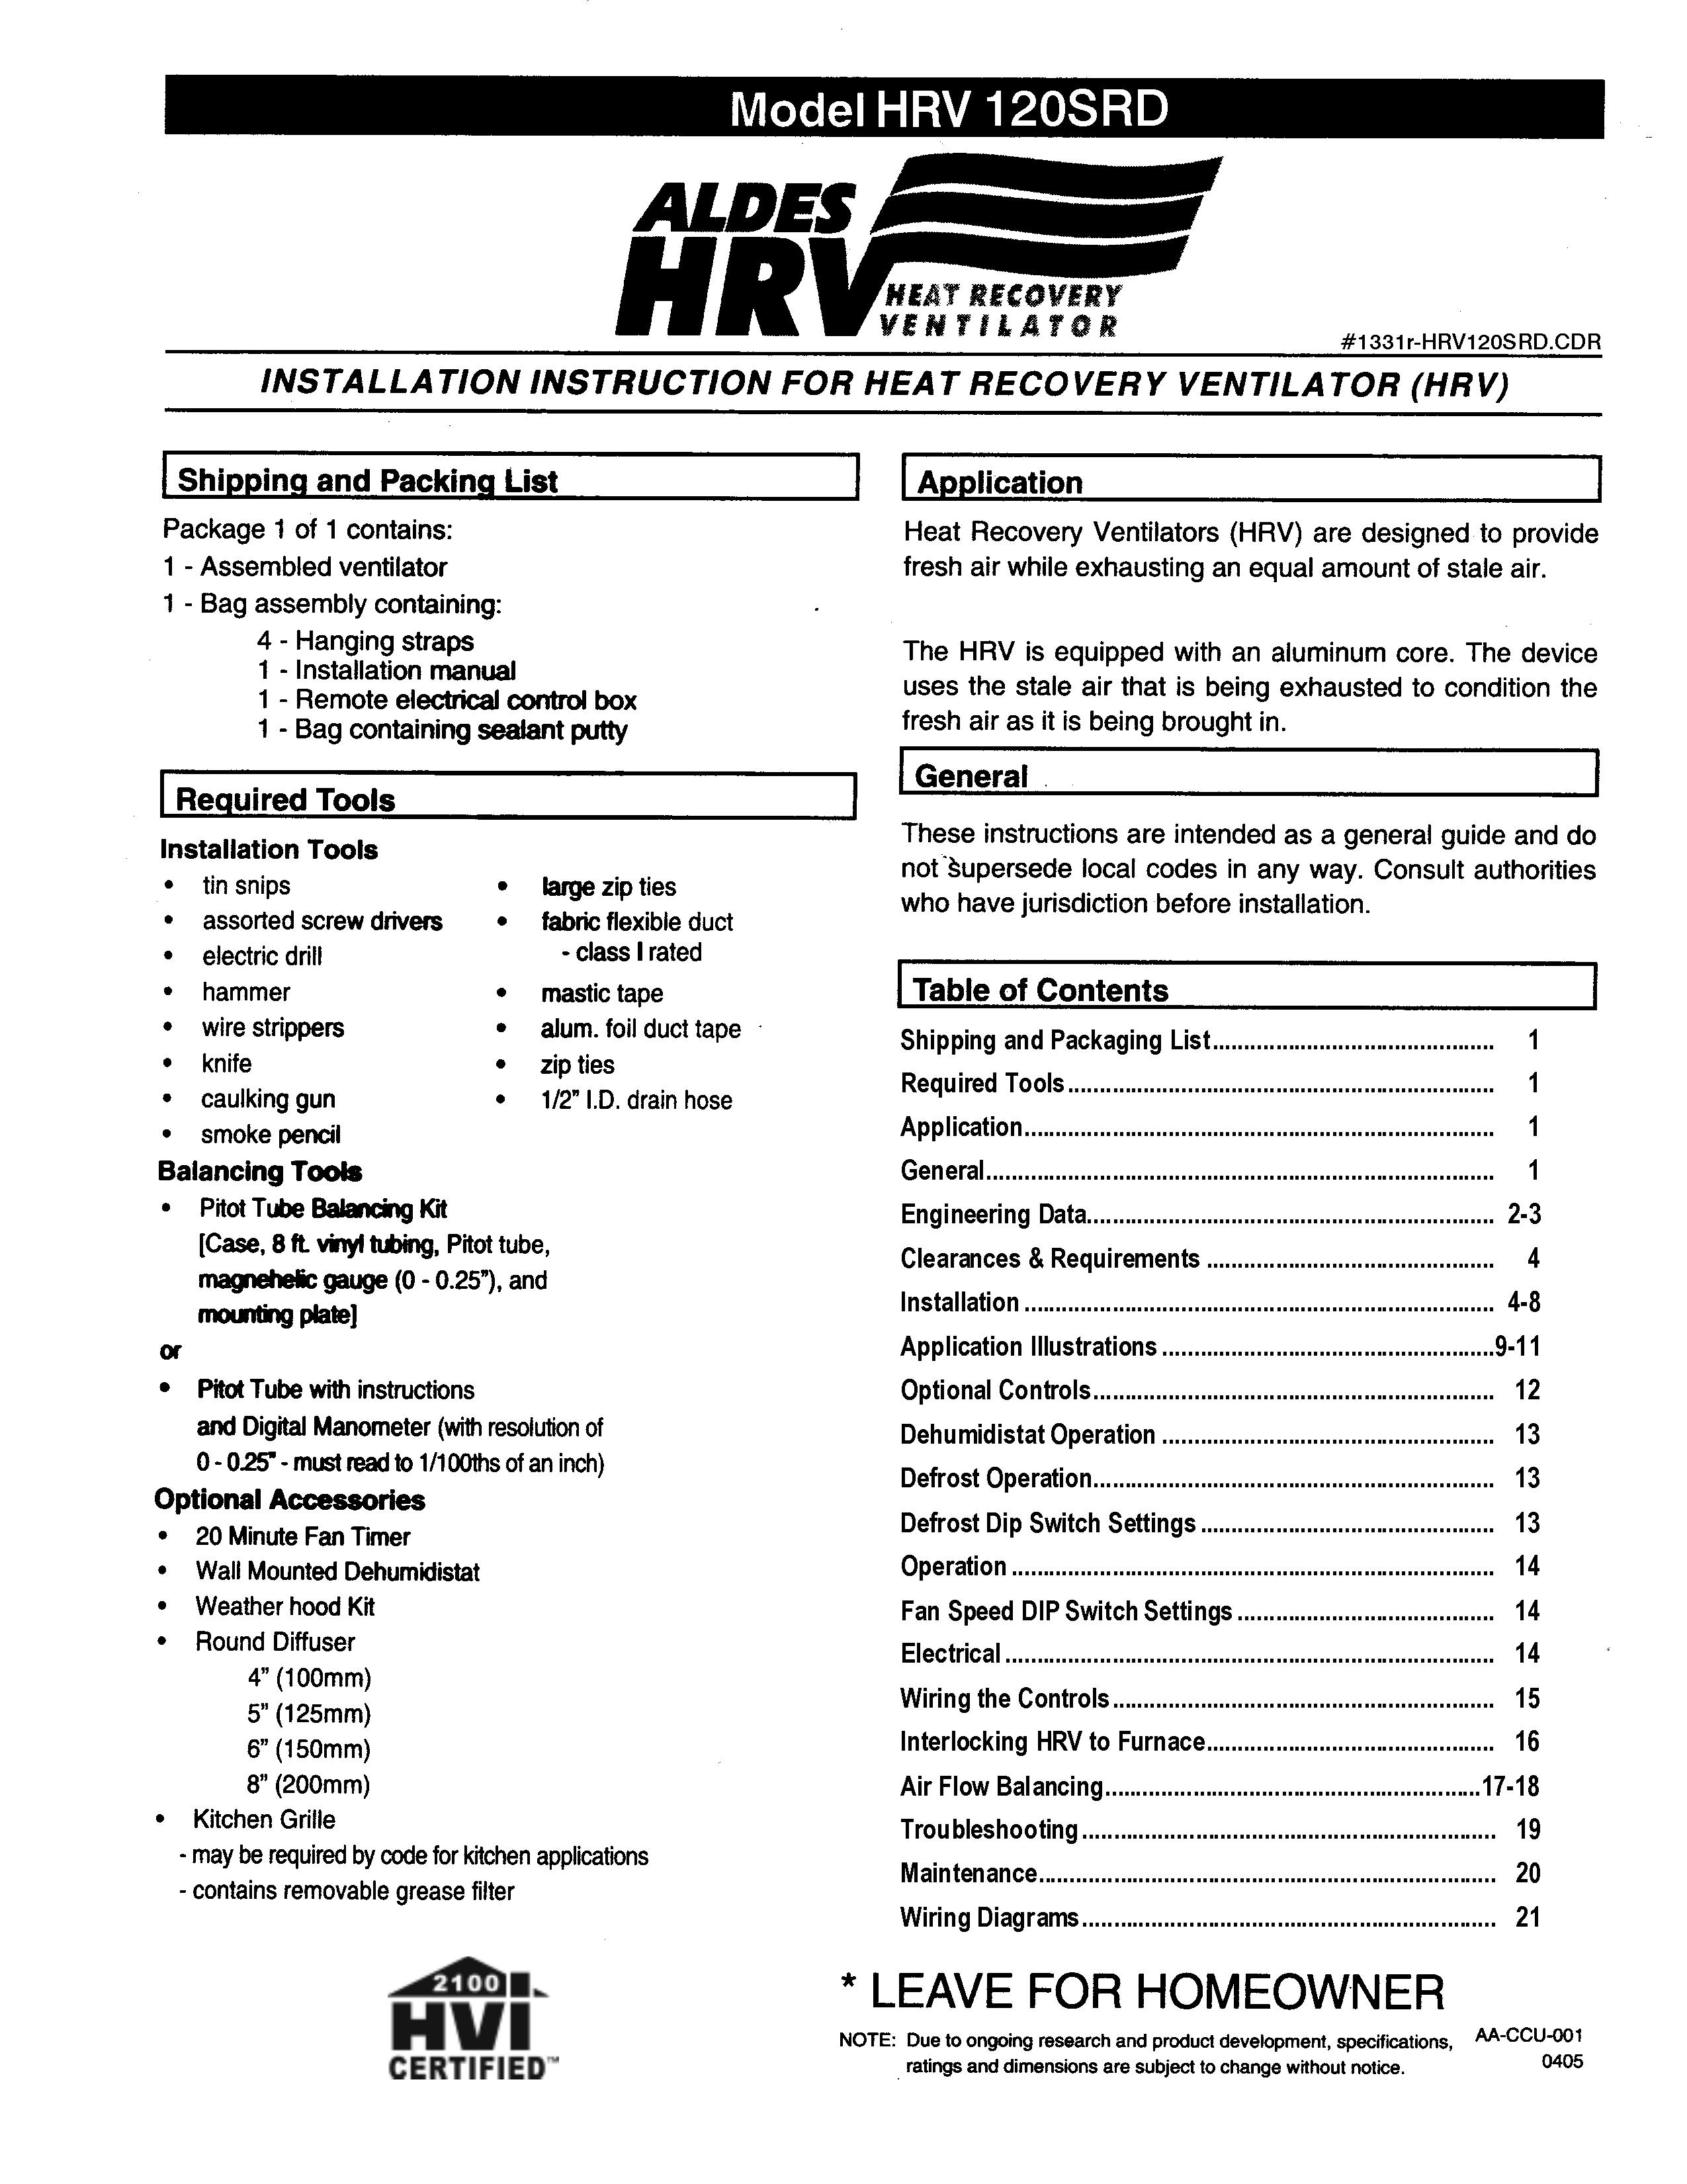 American Aldes HRV 120SRD Ventilation Hood User Manual